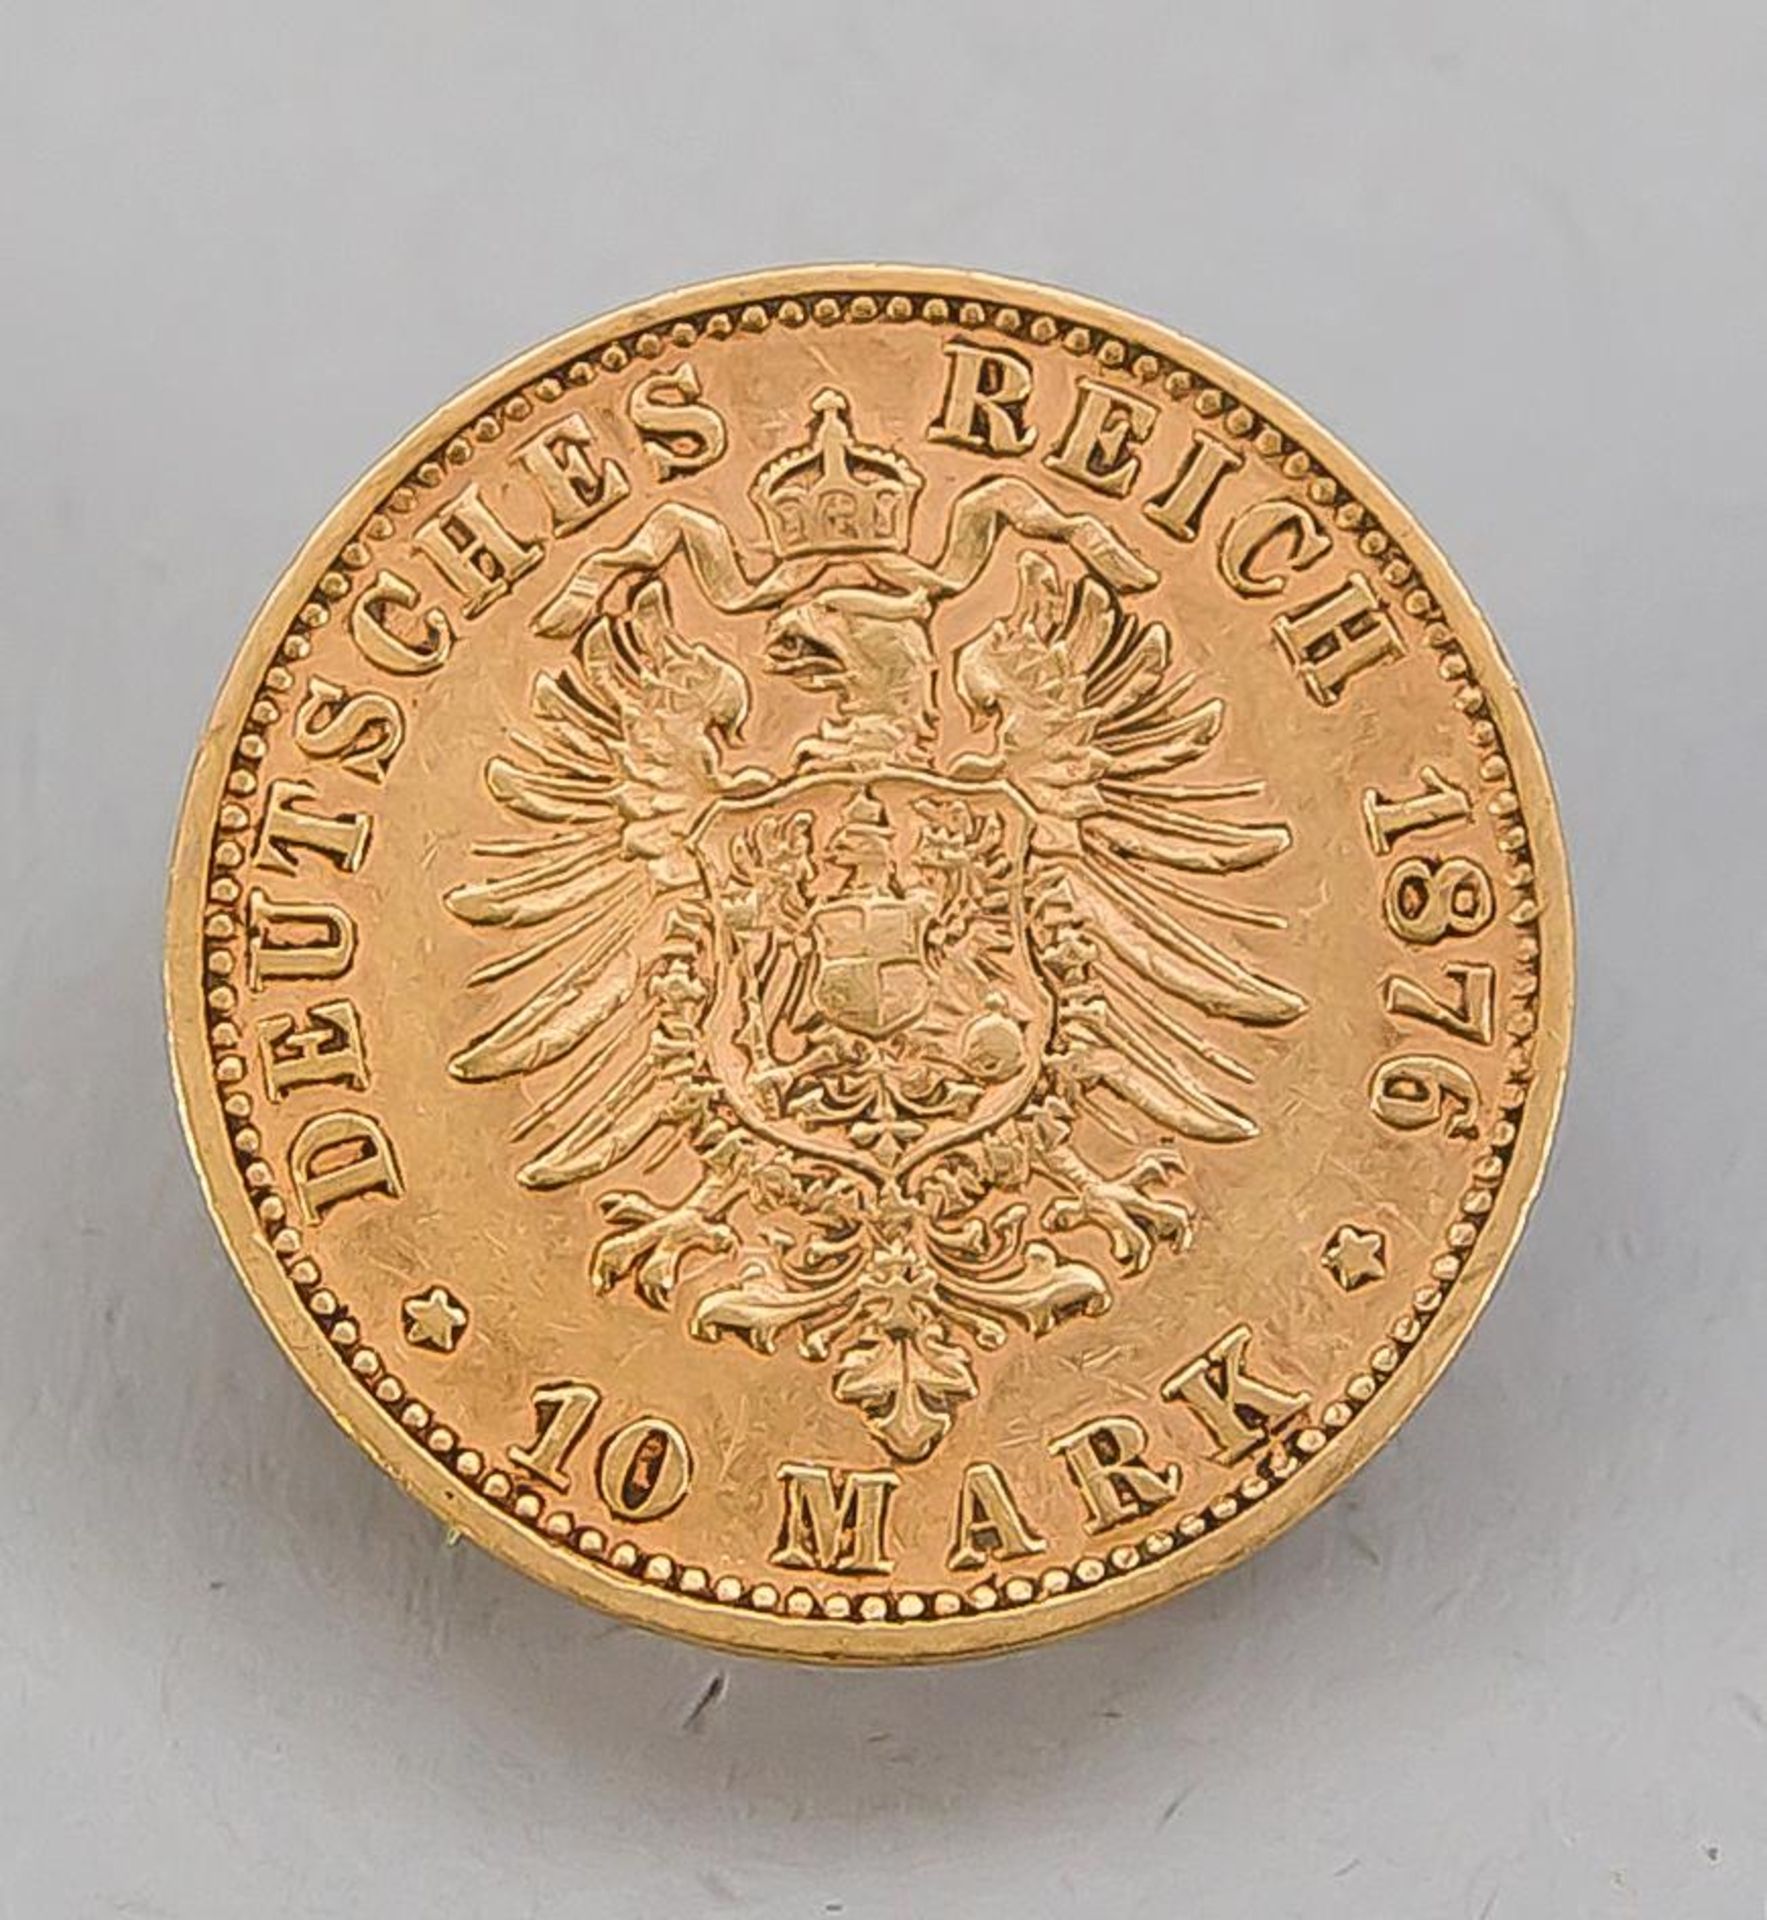 Goldmünze Deutsches Reich 10 Mark, Ludwig II König v. Bayern 1876/D, ca. 3,9 g - Bild 2 aus 2